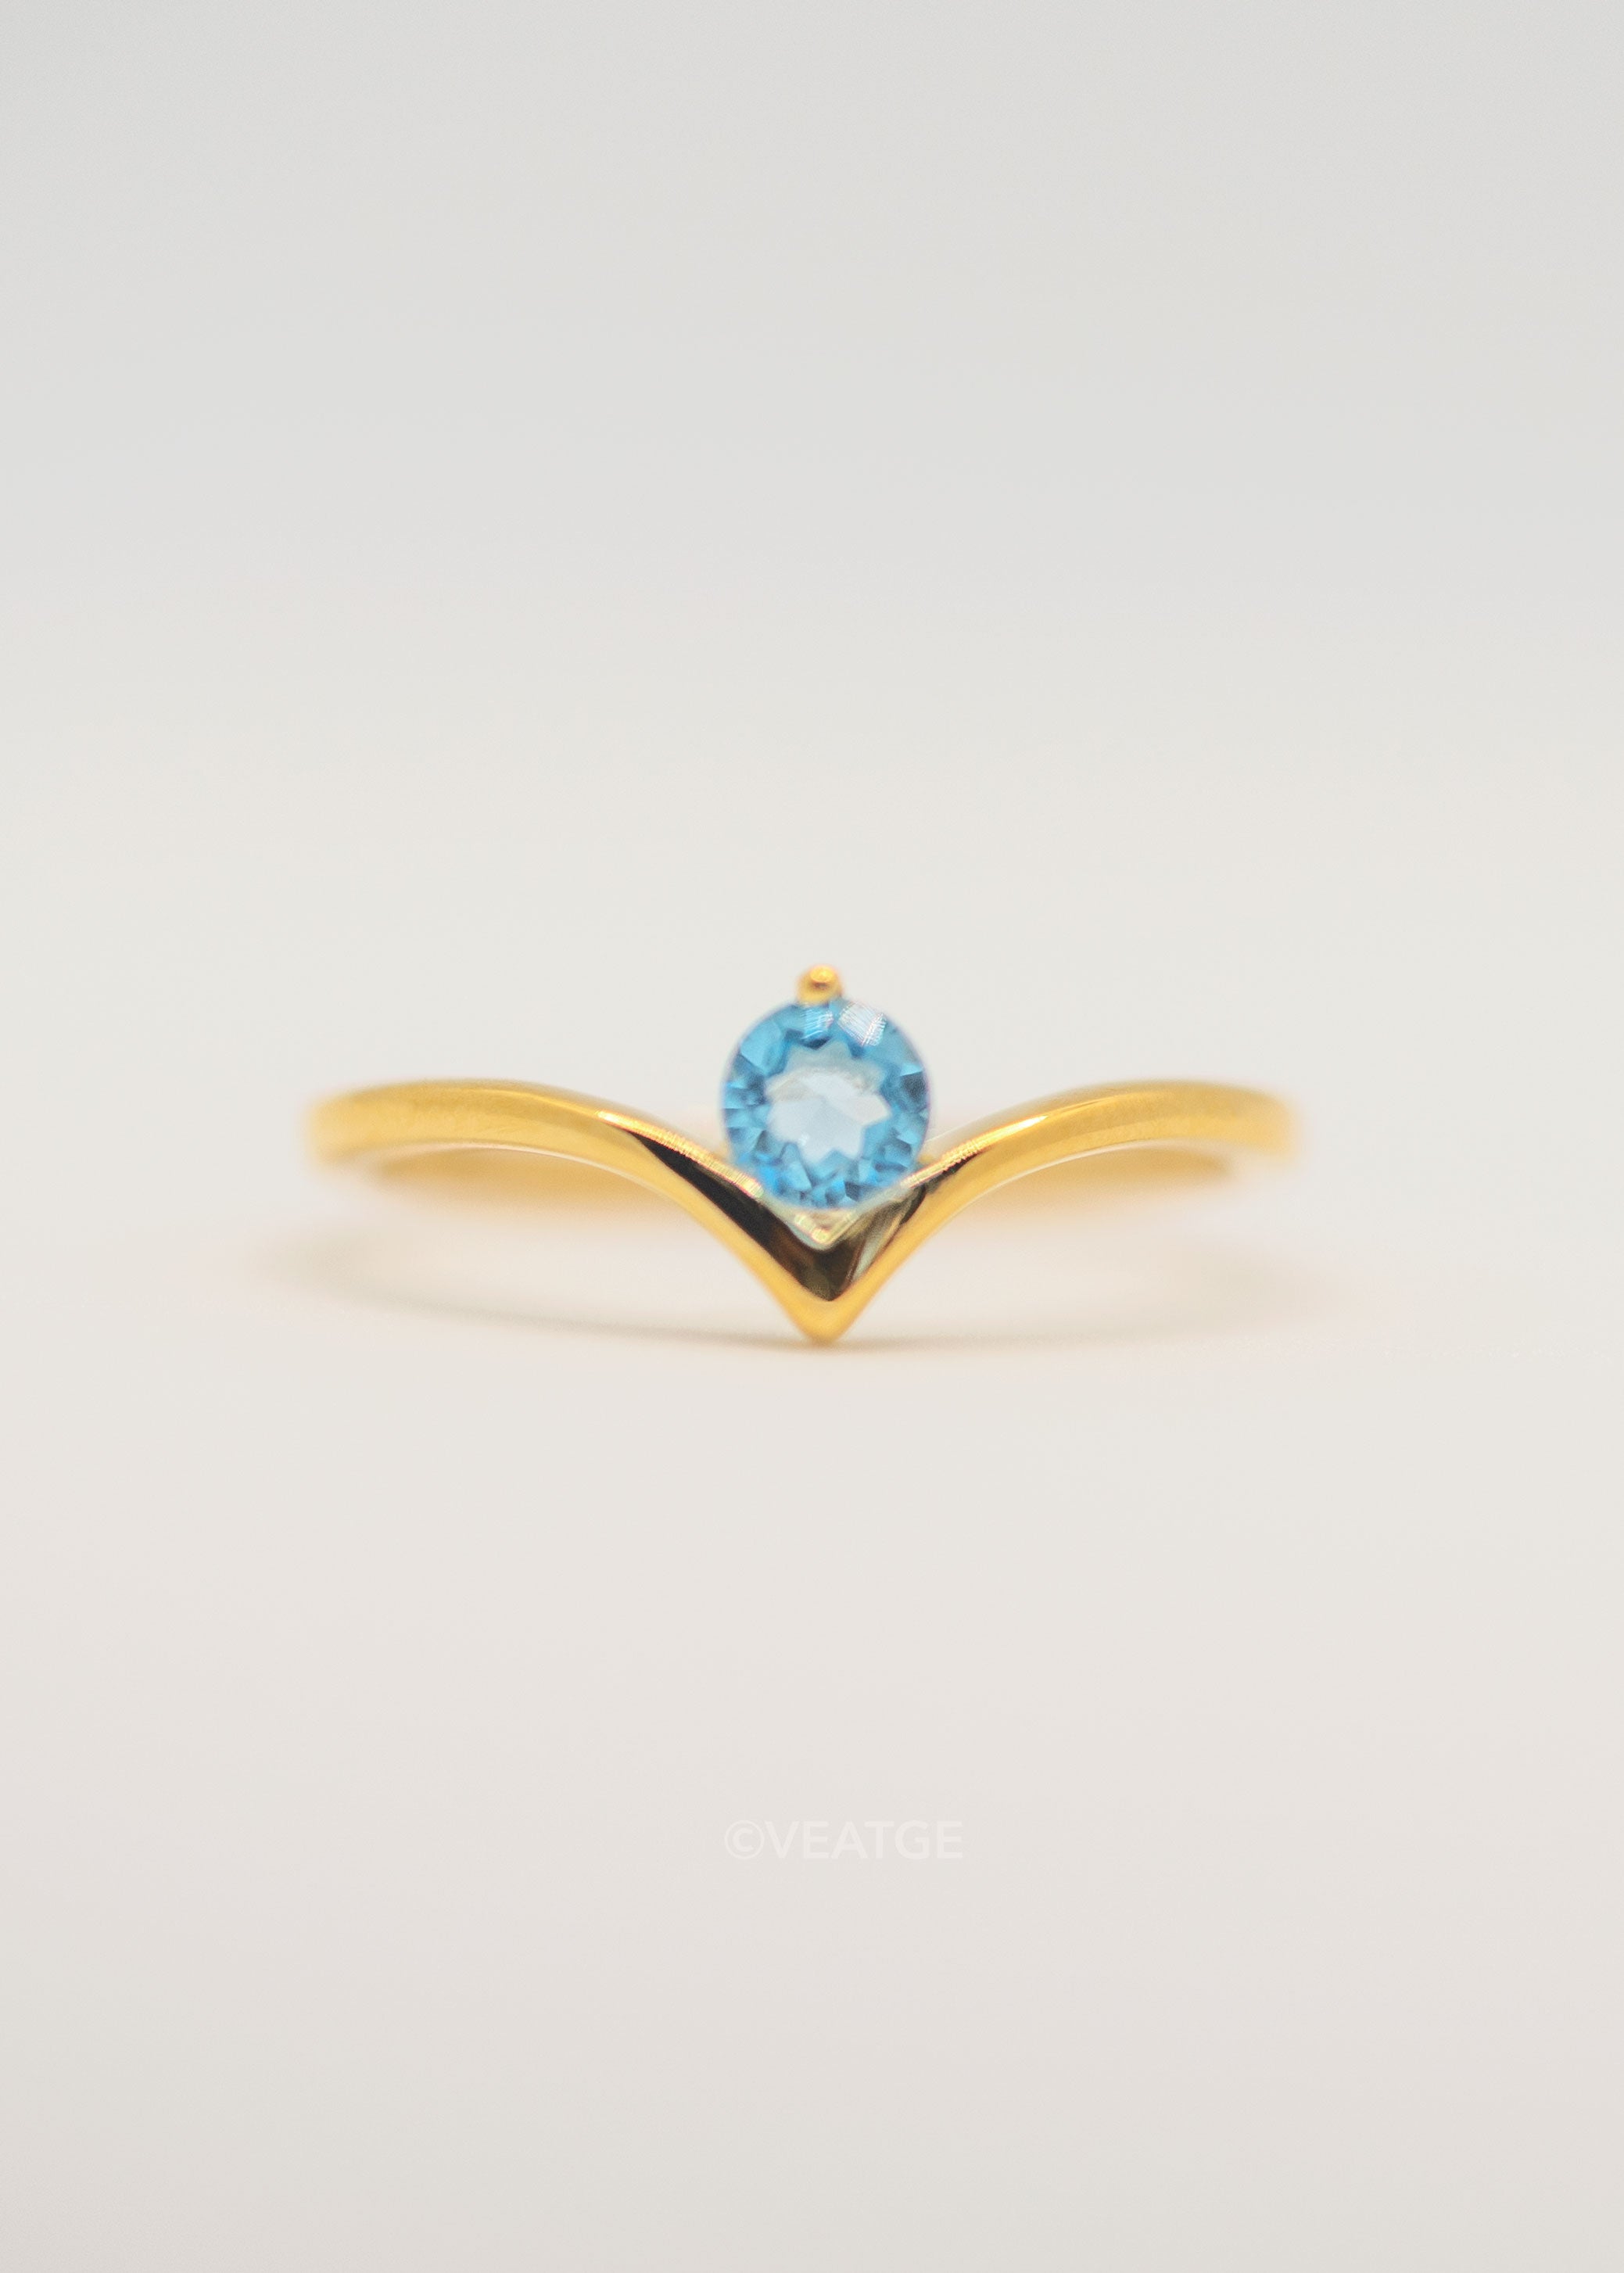 Chevron Gemstone Ring, Peak V shape ring in gold vermeil Swiss Blue Topaz Genuine gifts for women engagement promise ring